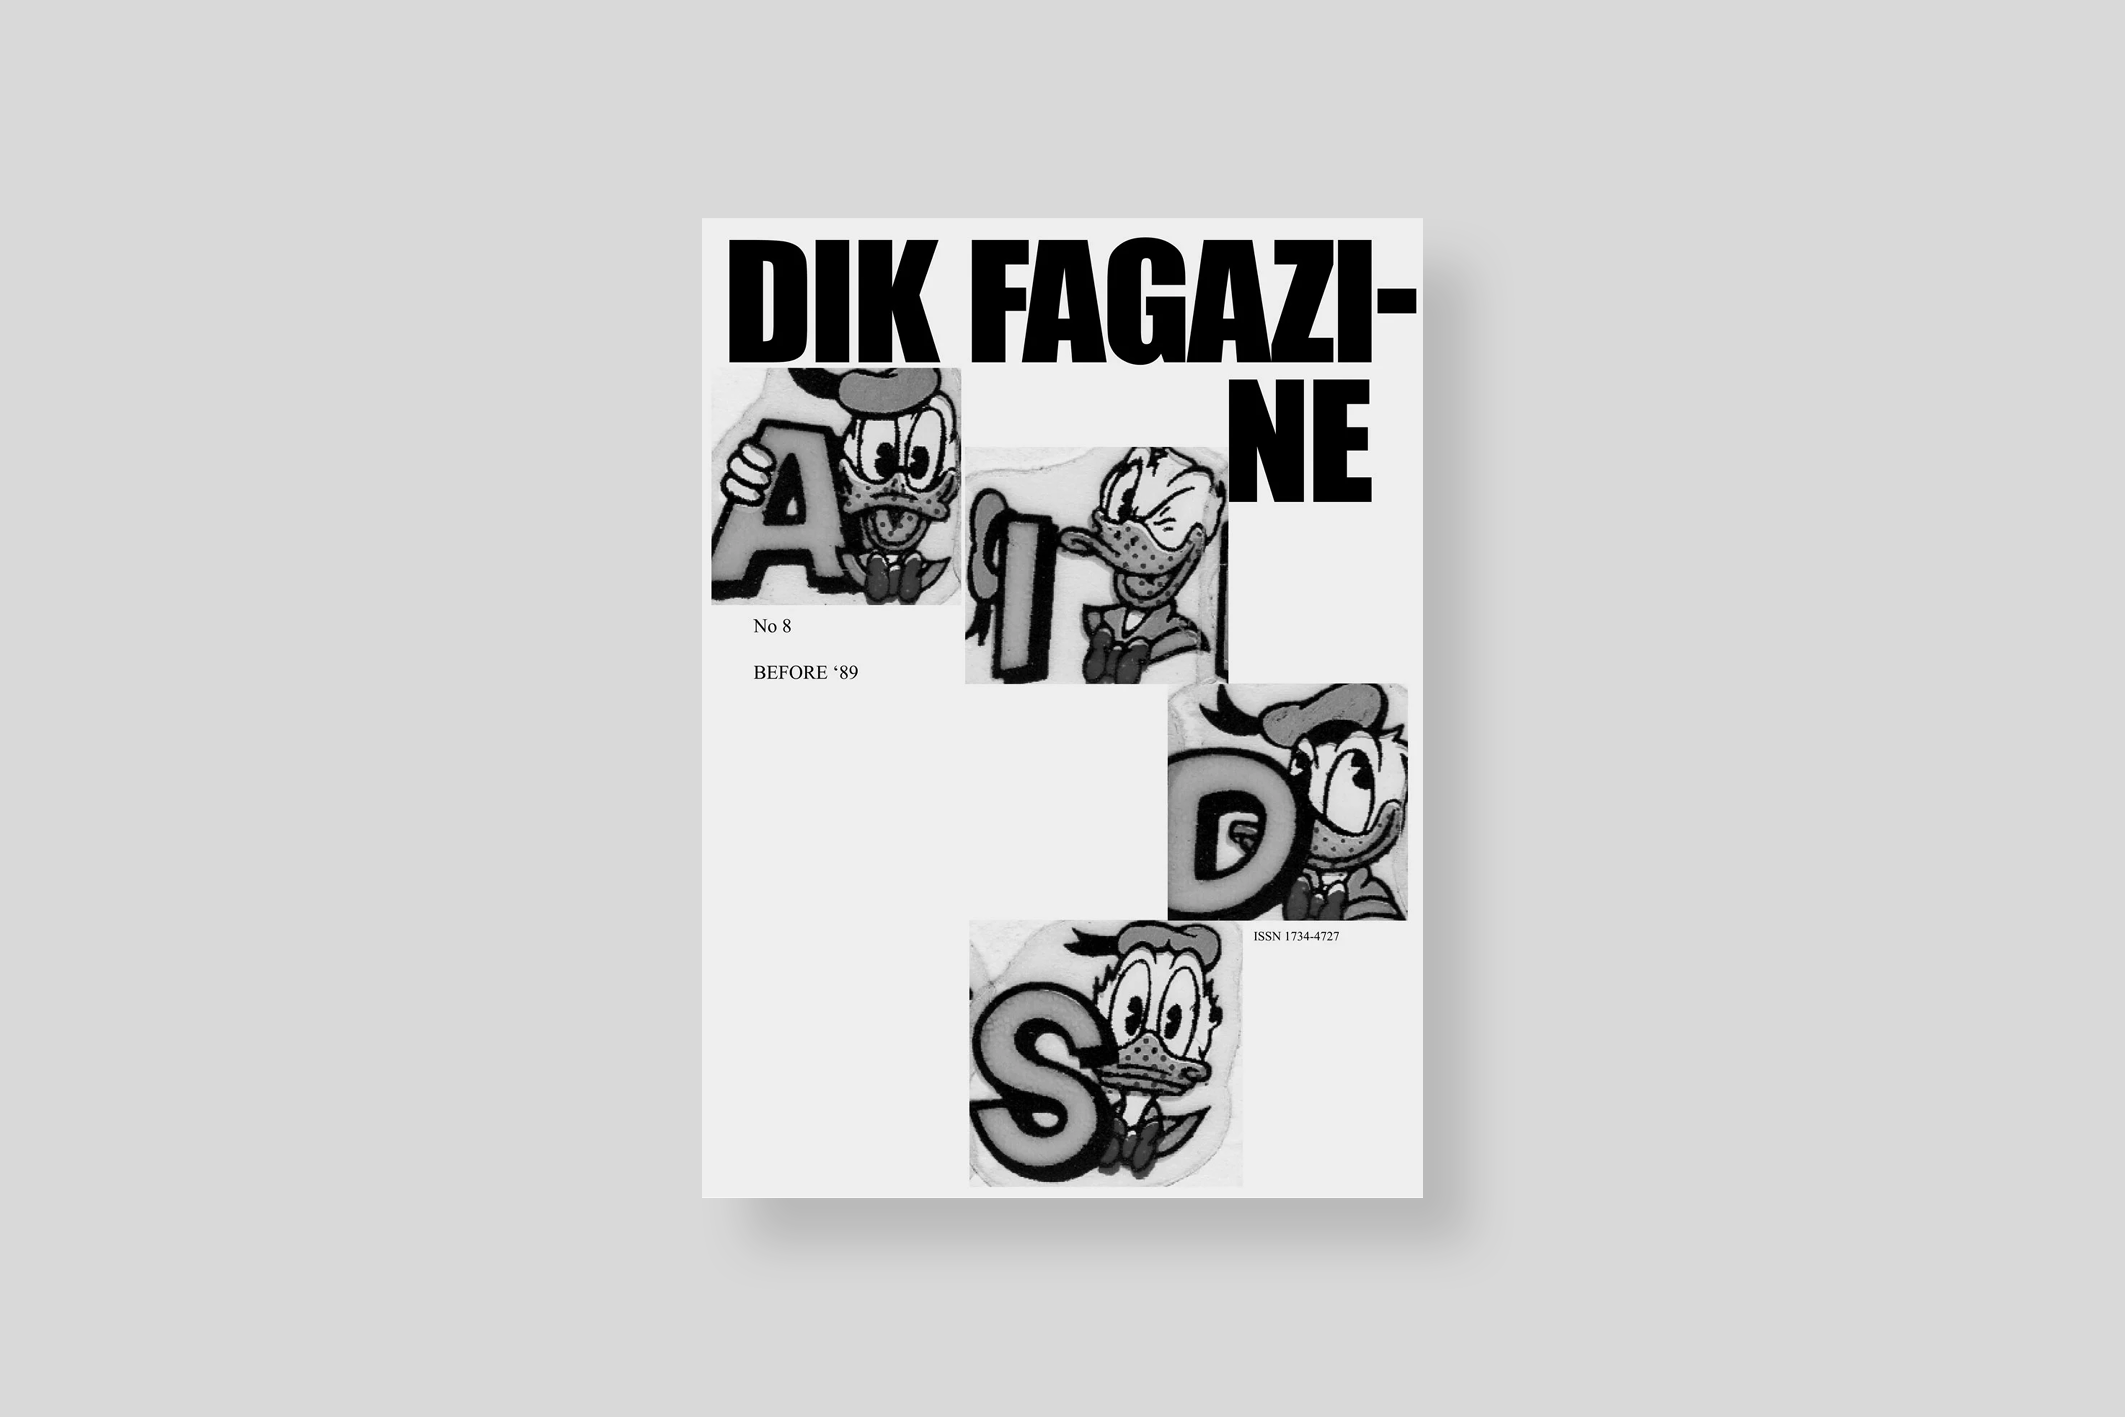 dik-fagazine-tillmans-cover